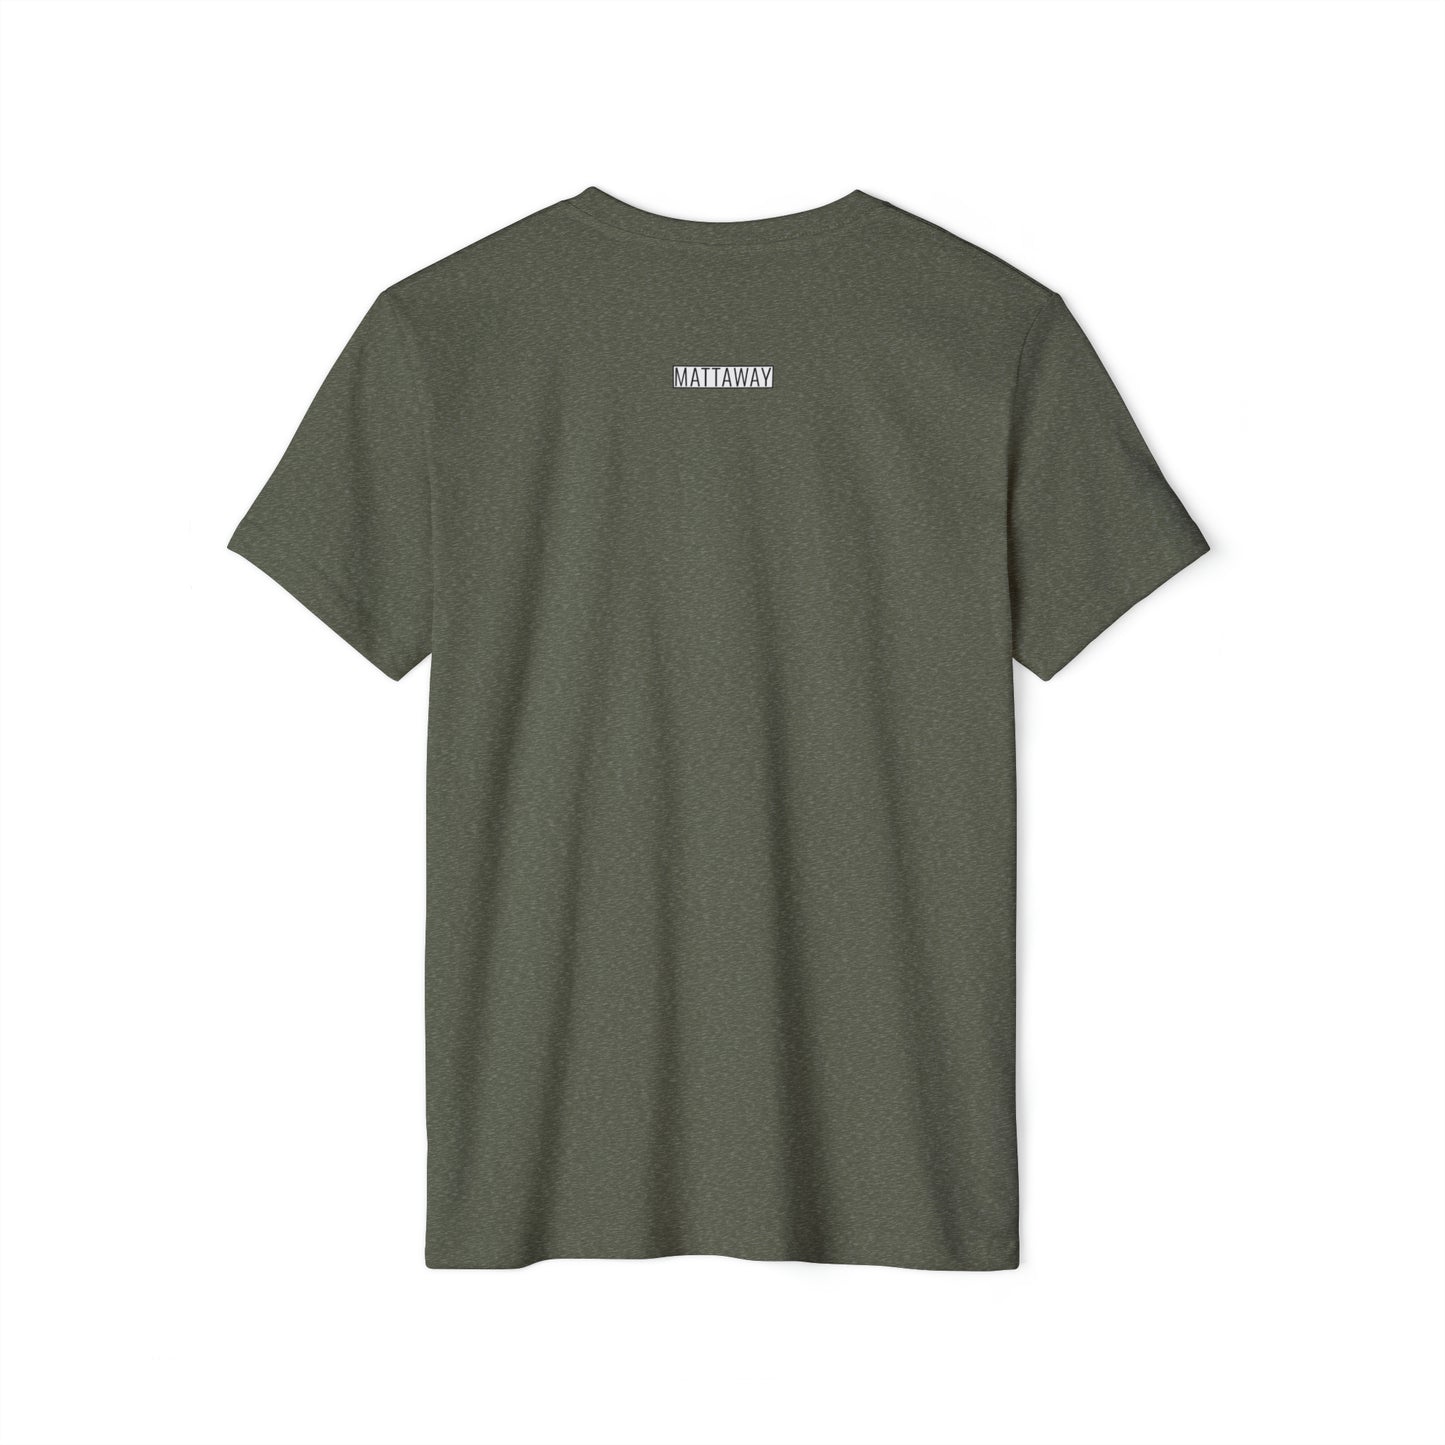 MINIMAL SHAPES 101 - Unisex Recycled Organic T-Shirt